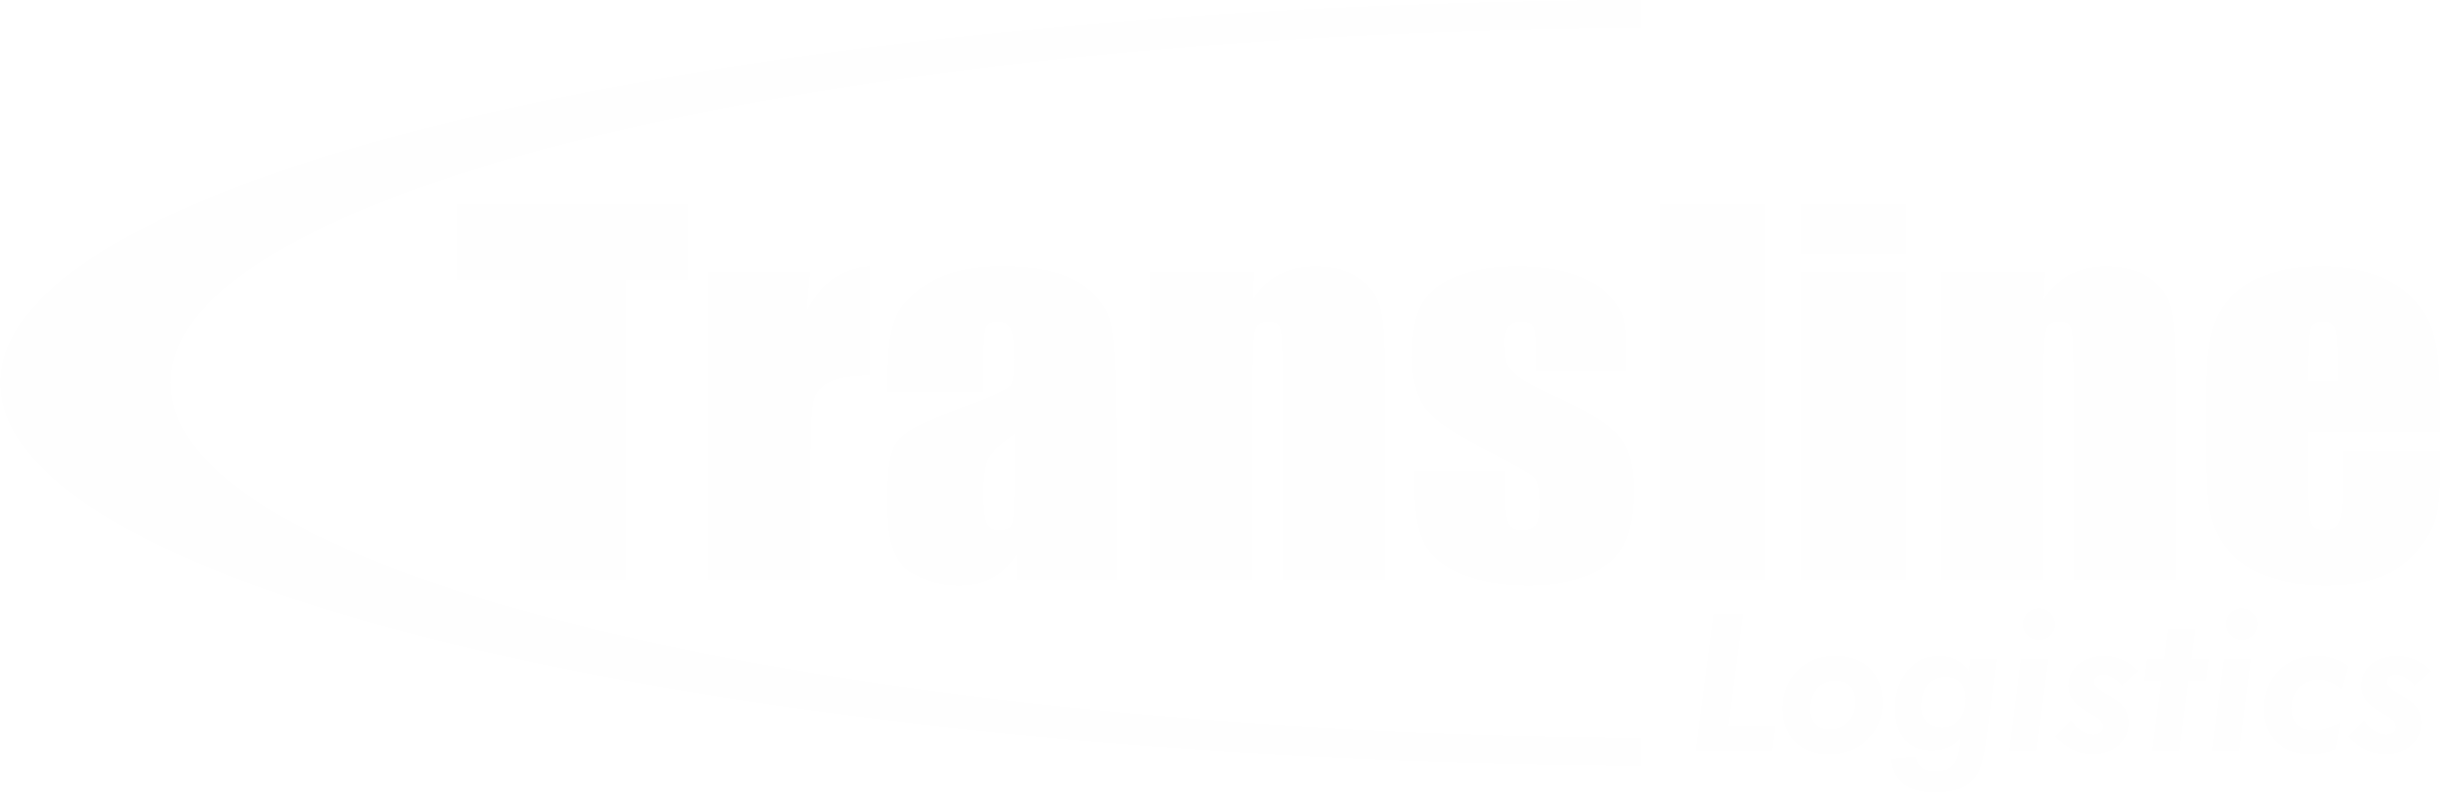 Transline-original-logo.png